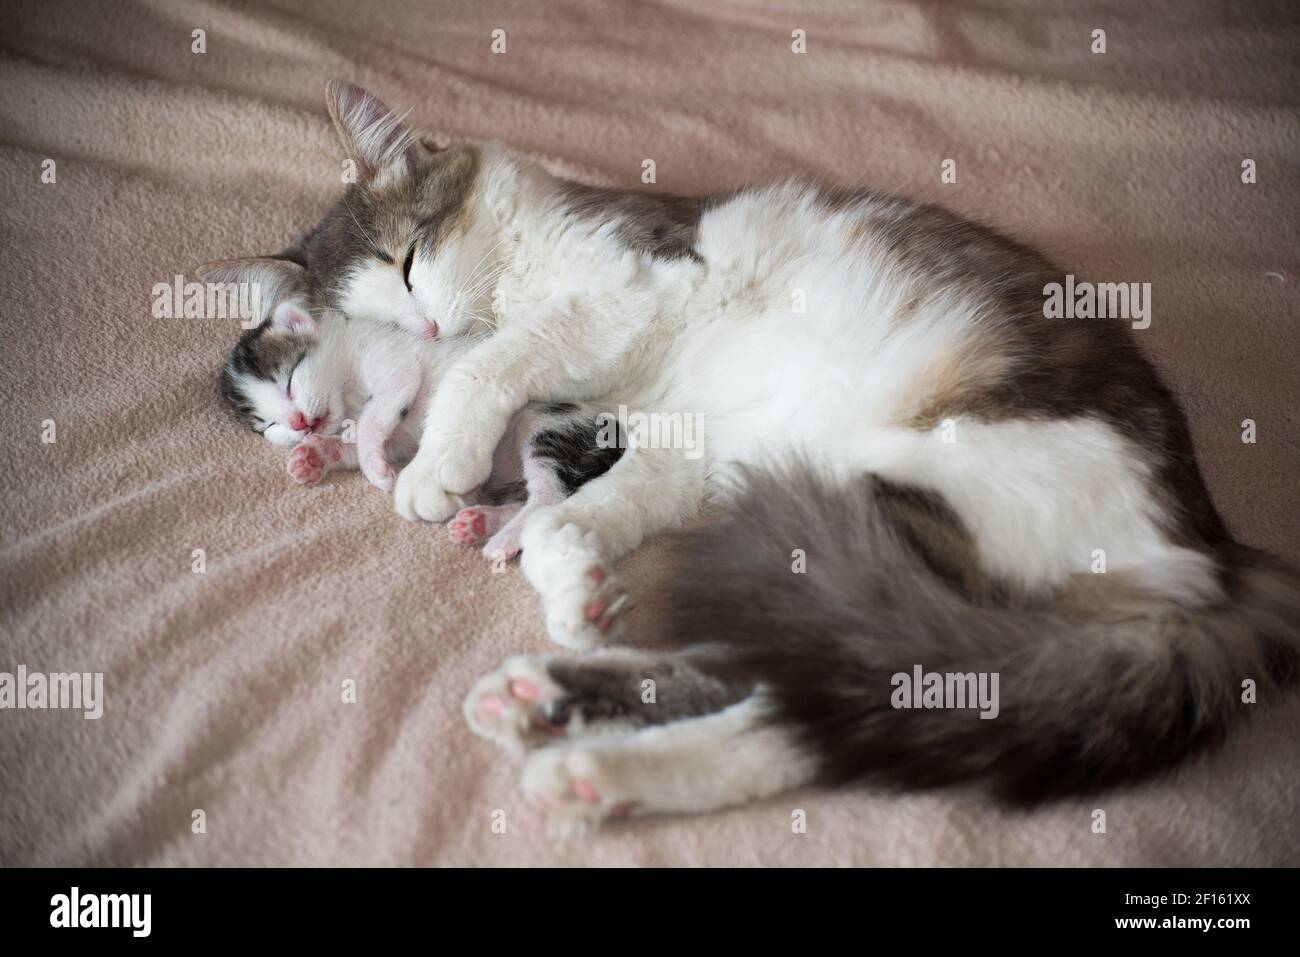 gatos durmiendo juntos la tierna imagen que enamora